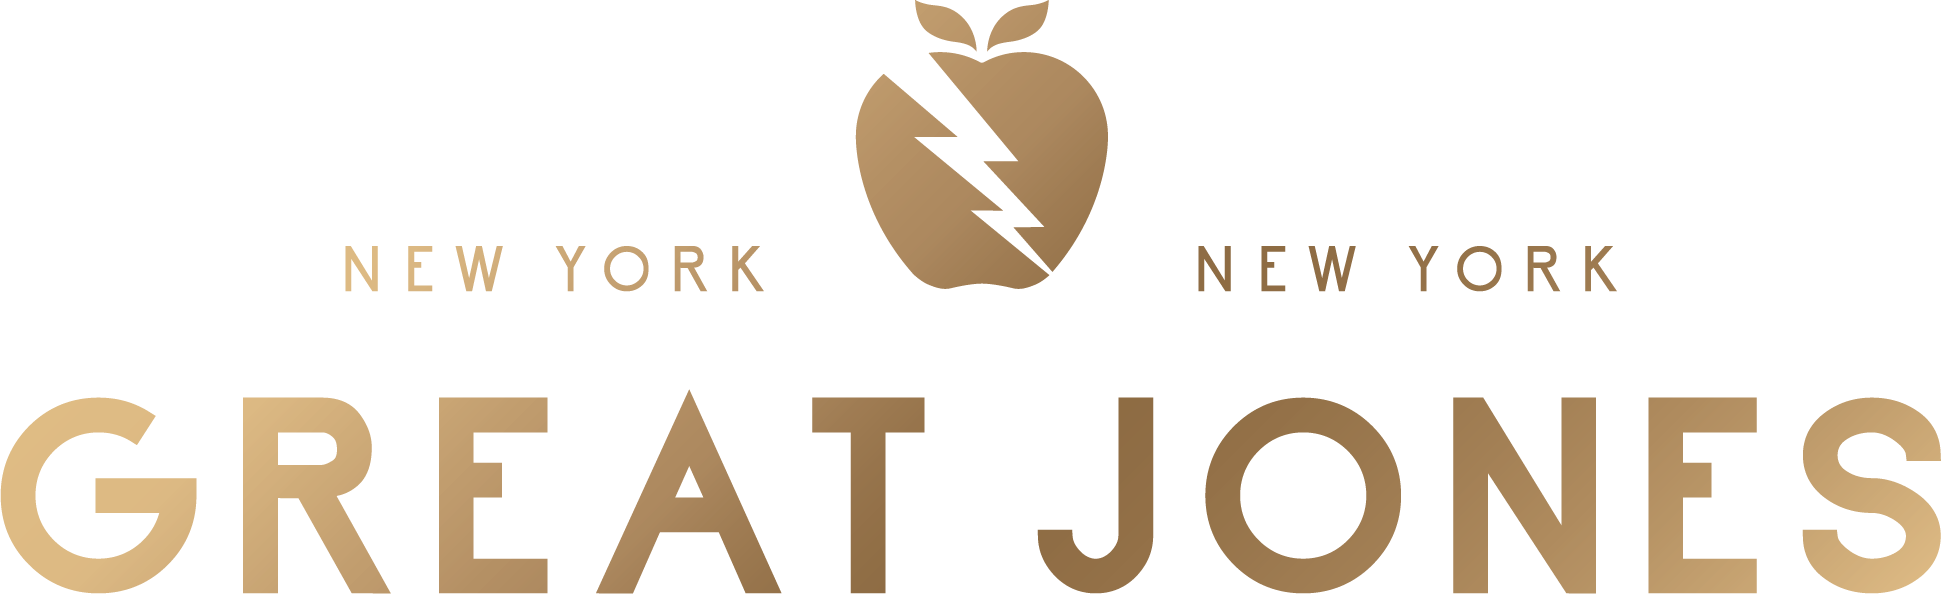 great jones logo